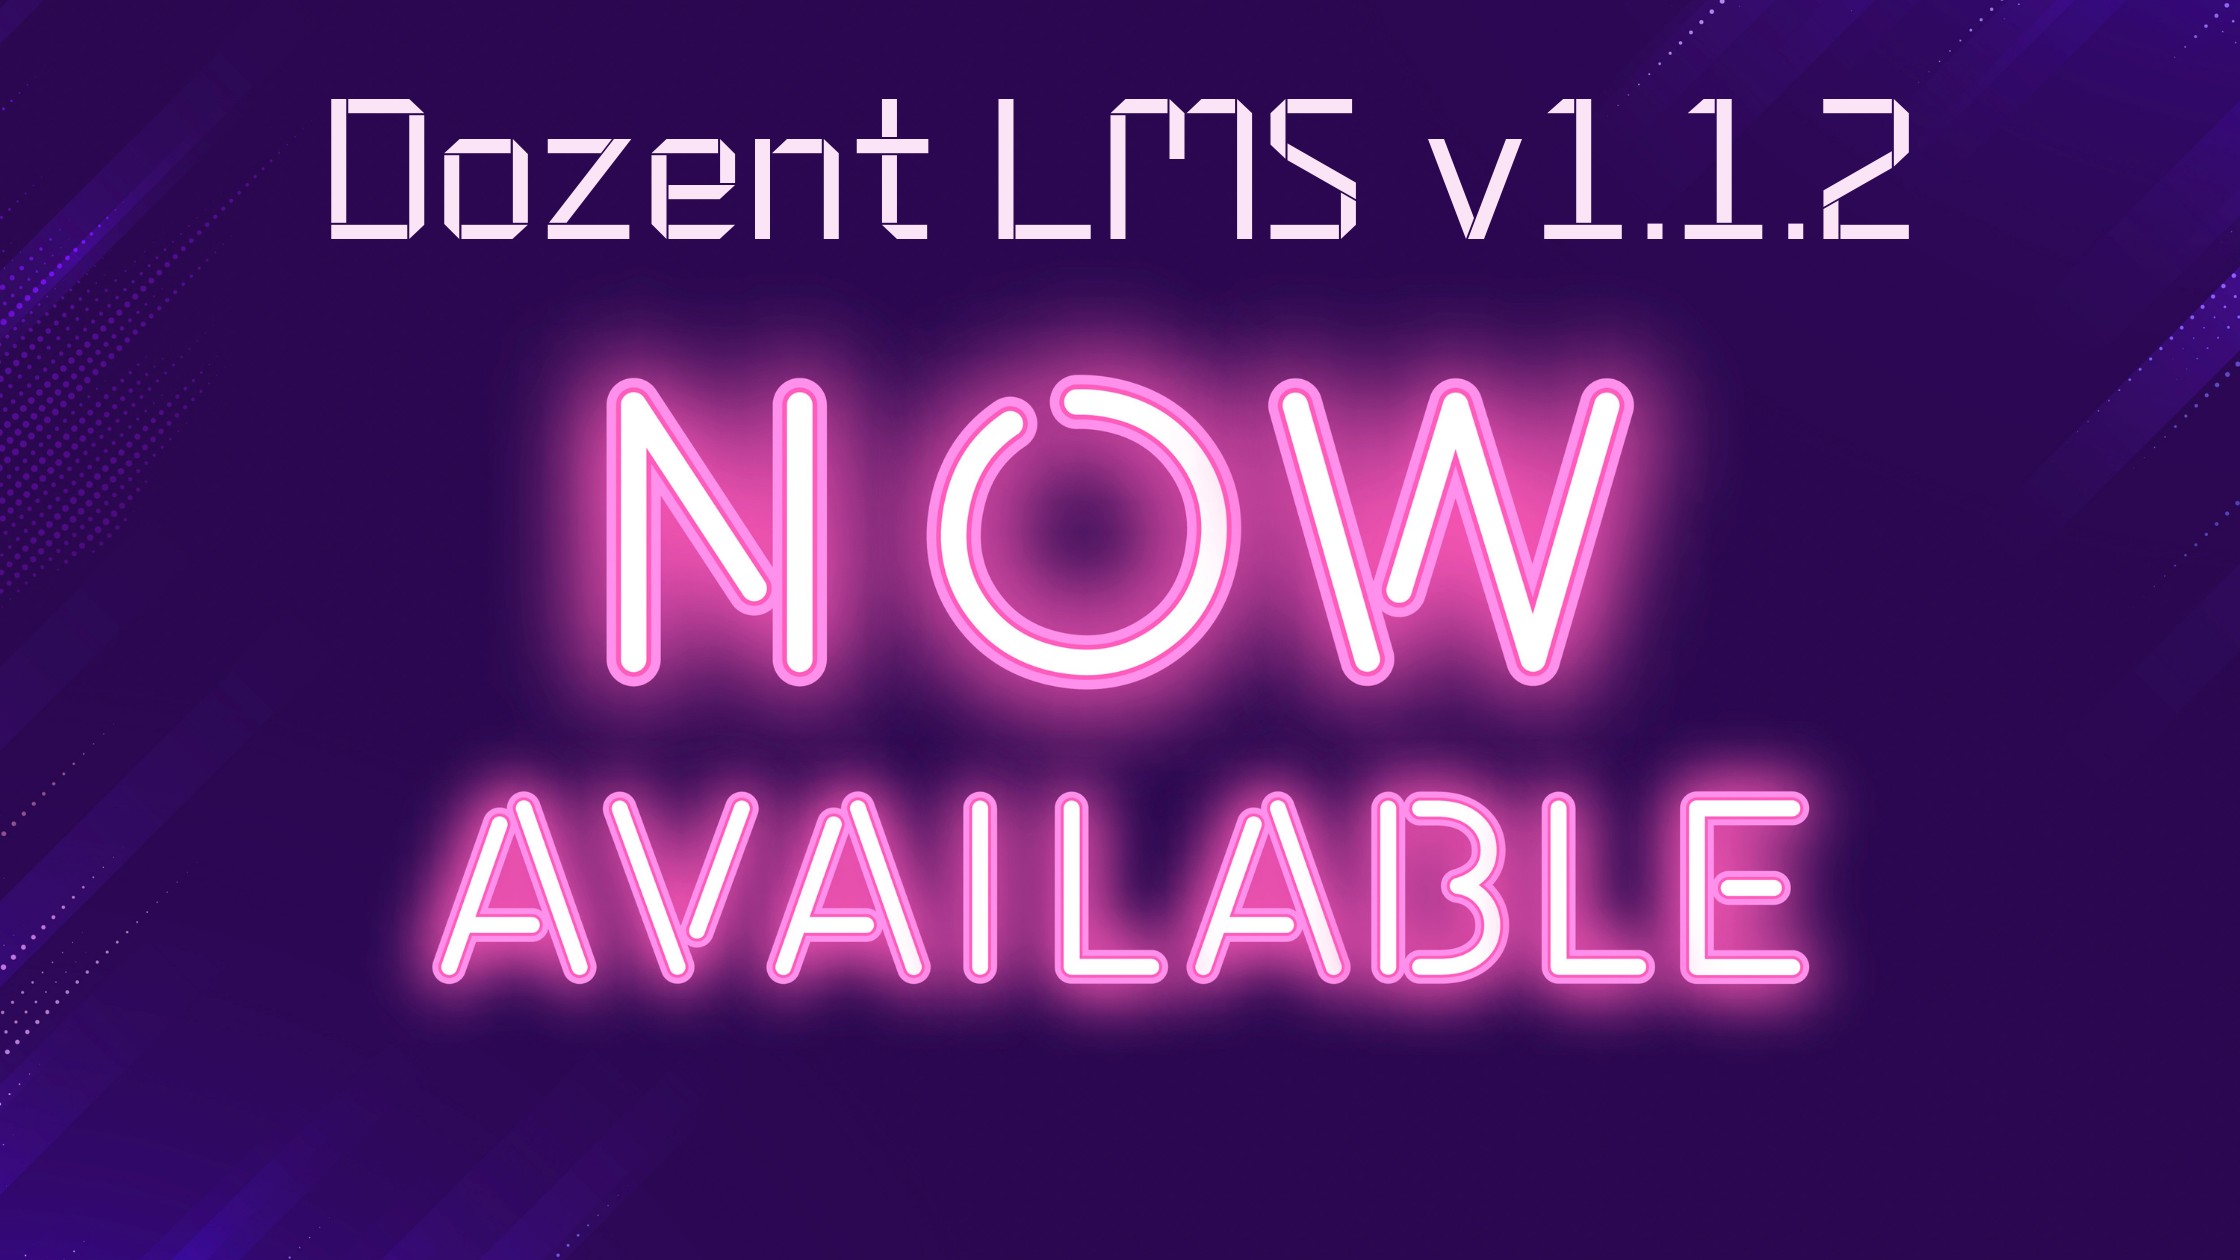 Dozent online LMS plugin releases version update